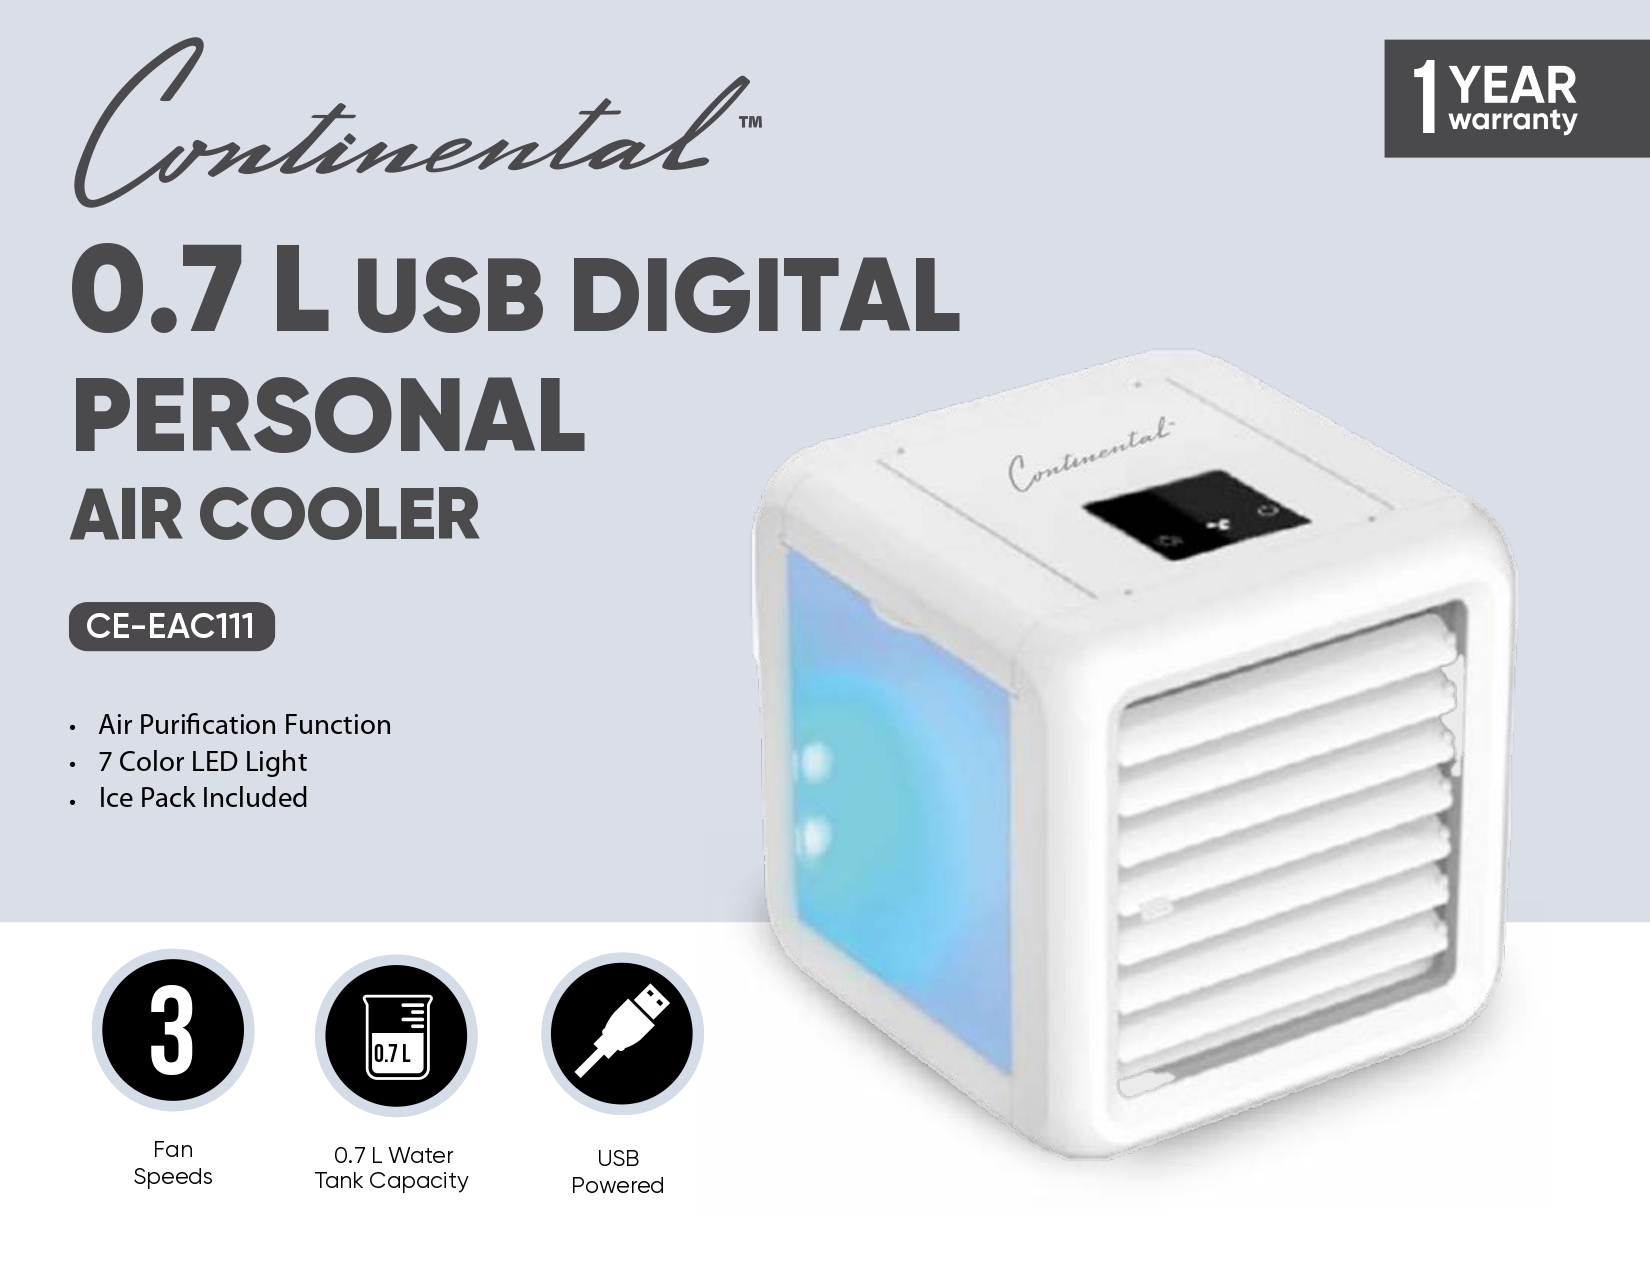 0.7 L USB DIGITAL PERSONAL AIR COOLER